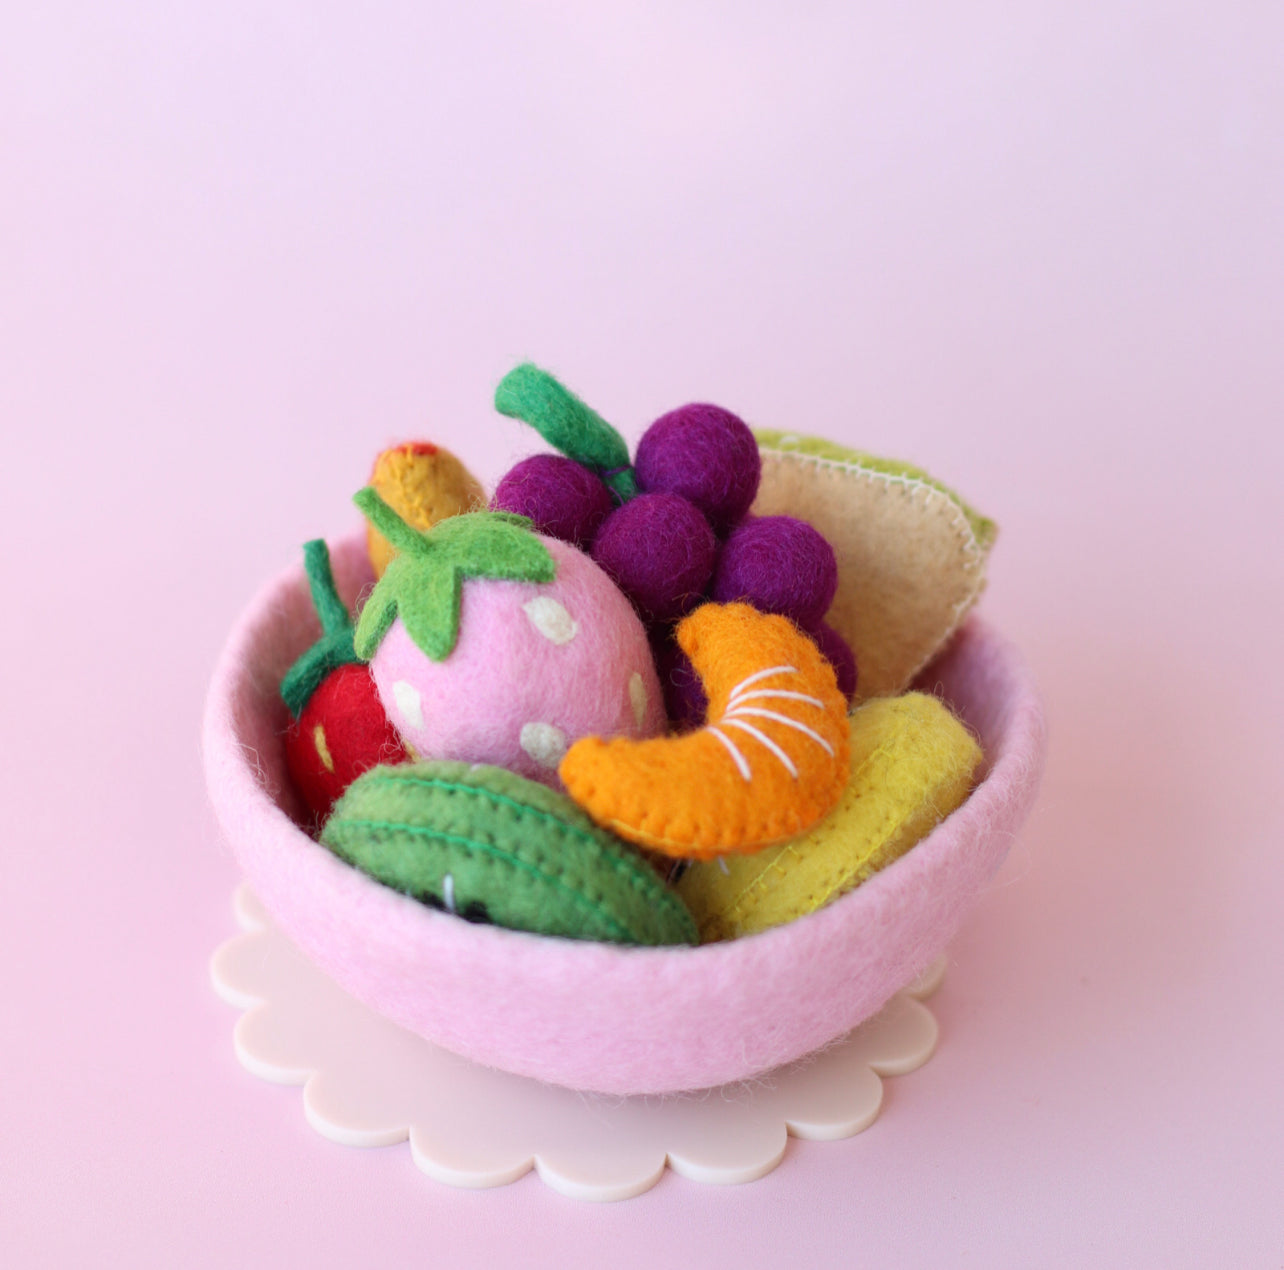 NEW! Tutti Fruity Fruit salad sets - choose your bowl colour - 9 pce set